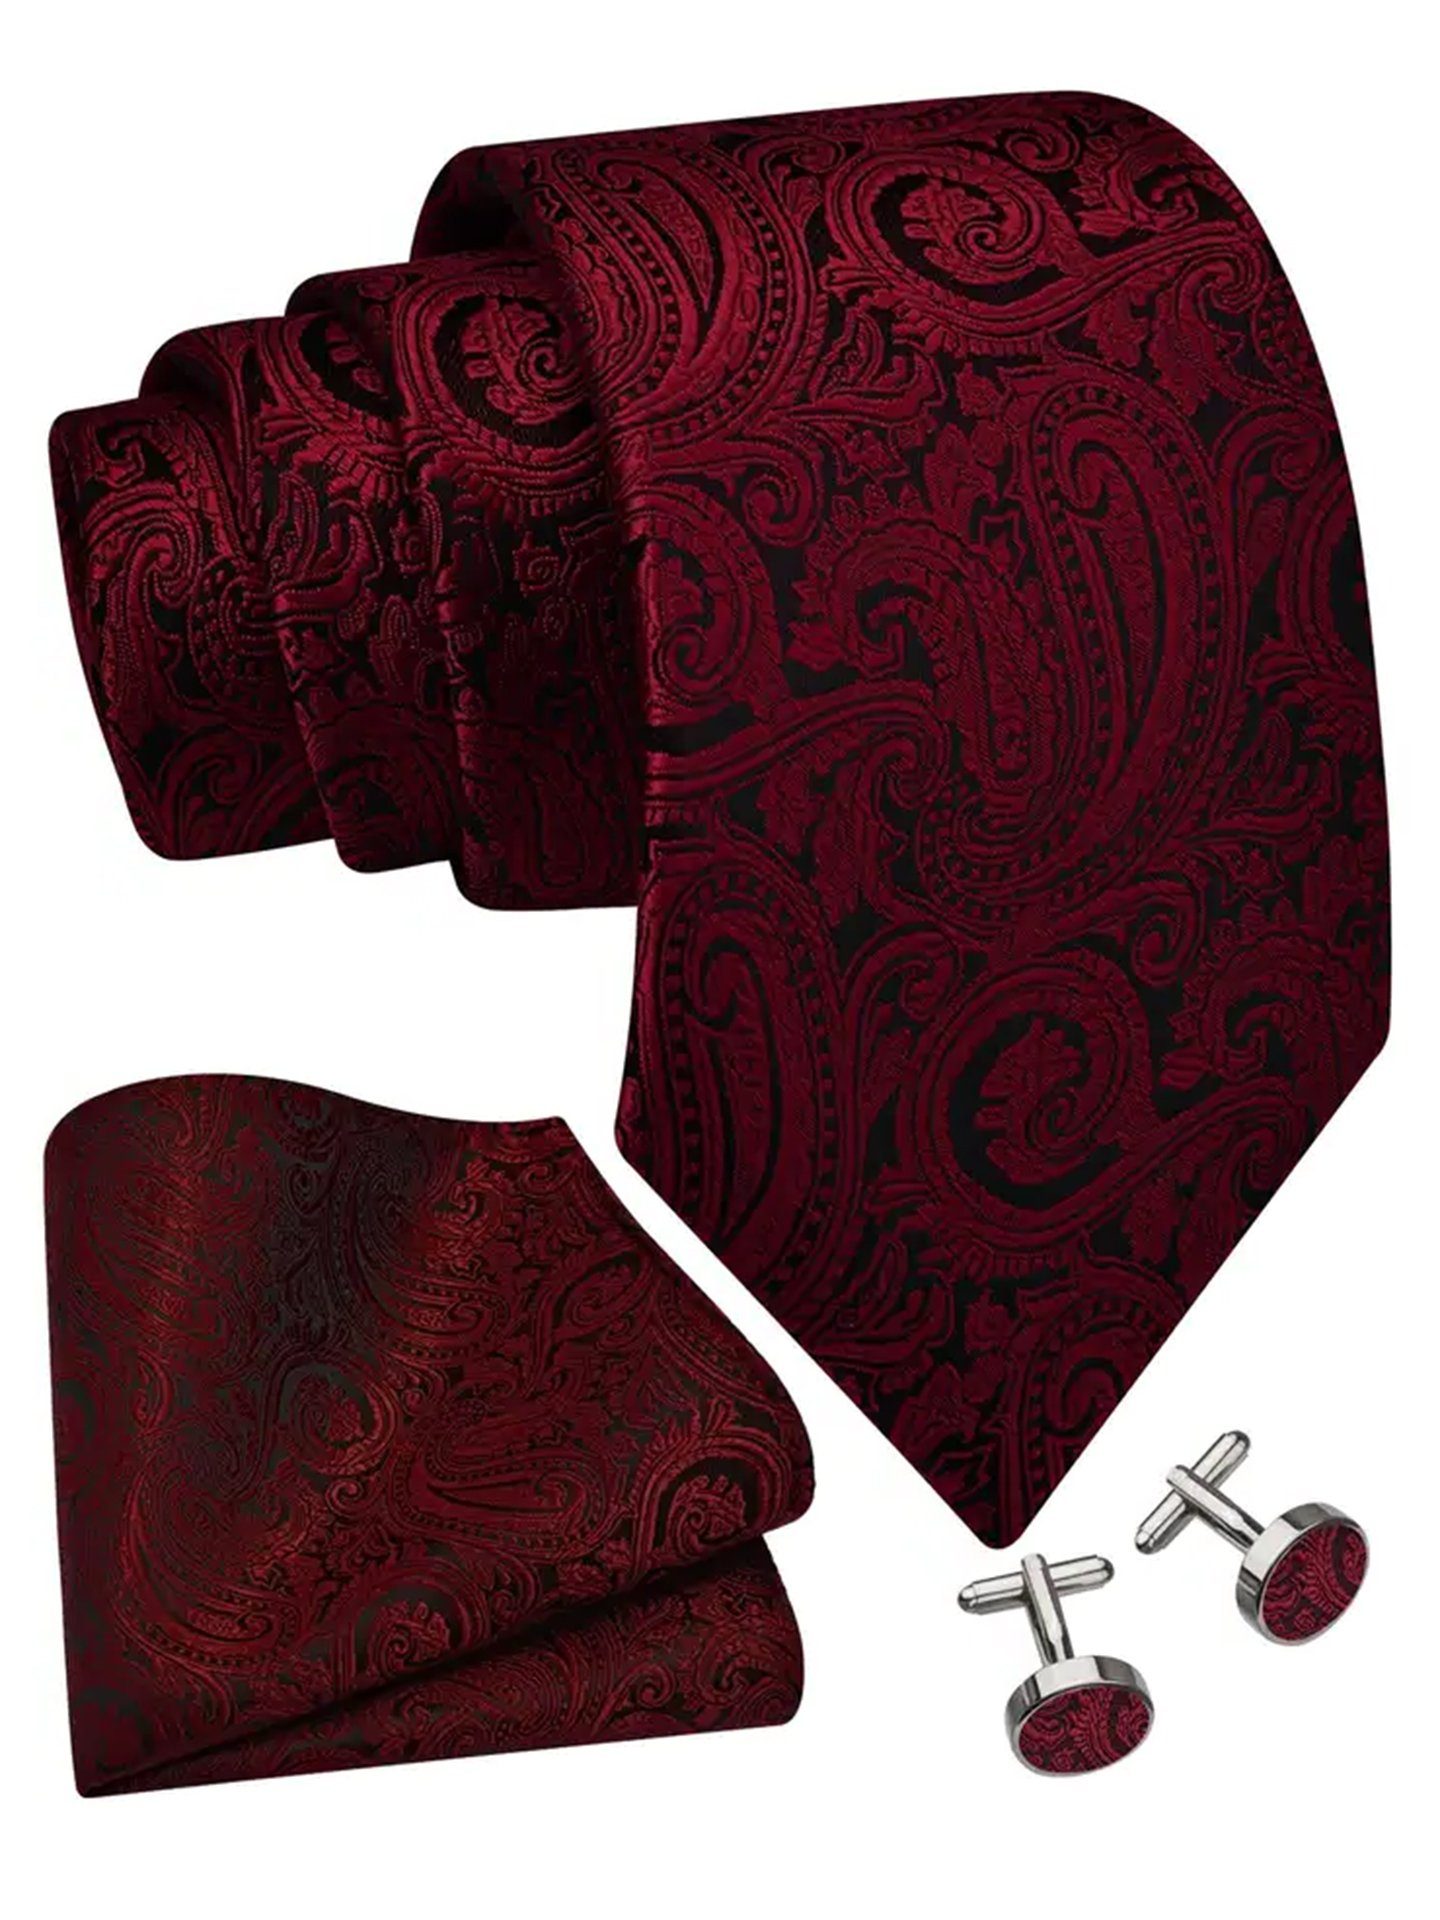 Dessins Manschettenknöpfe, sich Moschen-Bayern Sie in + + schönen Krawatten-Set - Krawatten Krawatte Krawatte unseren Seide Seidenkrawatte Herrenkrawatte selbst von Trachtenkrawatte Krawatte Einstecktuch Rot edlen Überzeugen